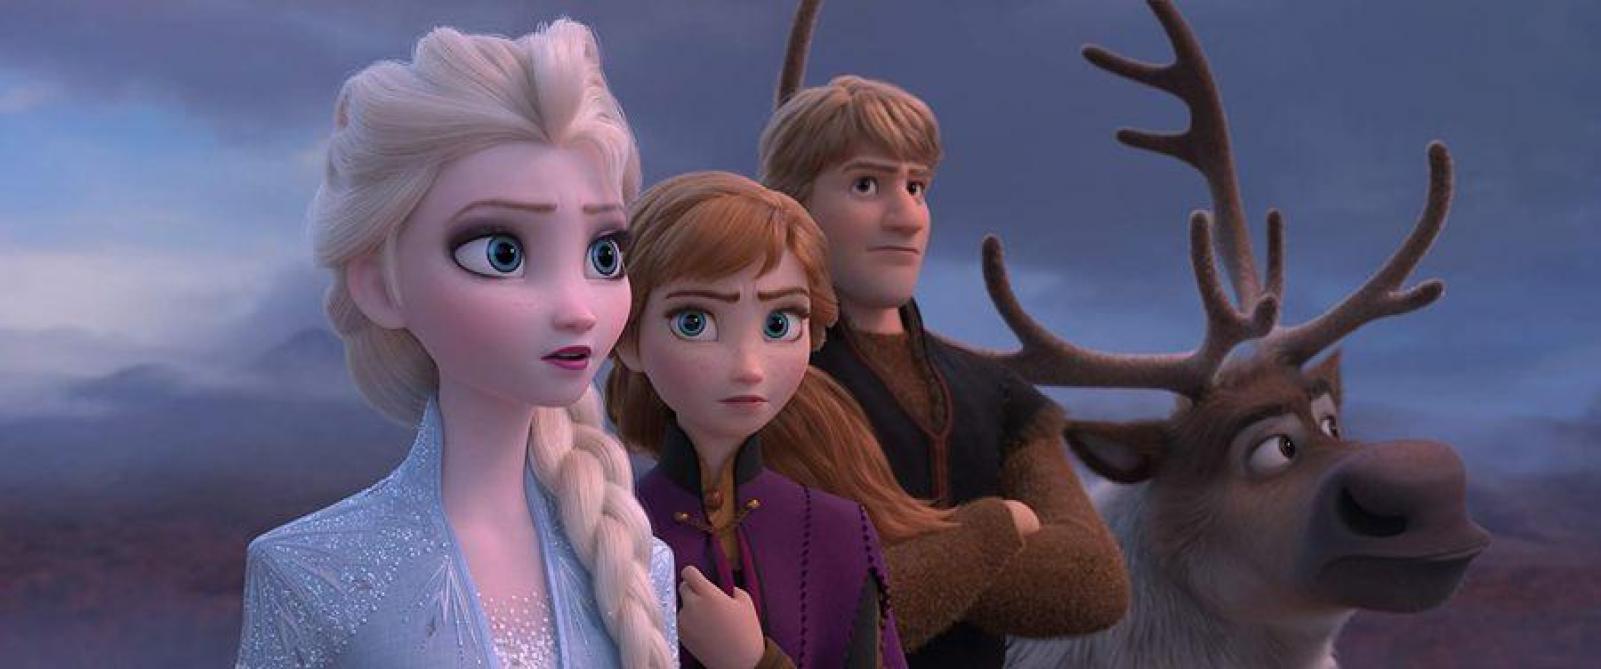 OLAF et Samantha : QUANT JE SERAI PLUS GRAND. Extrait : Reine des